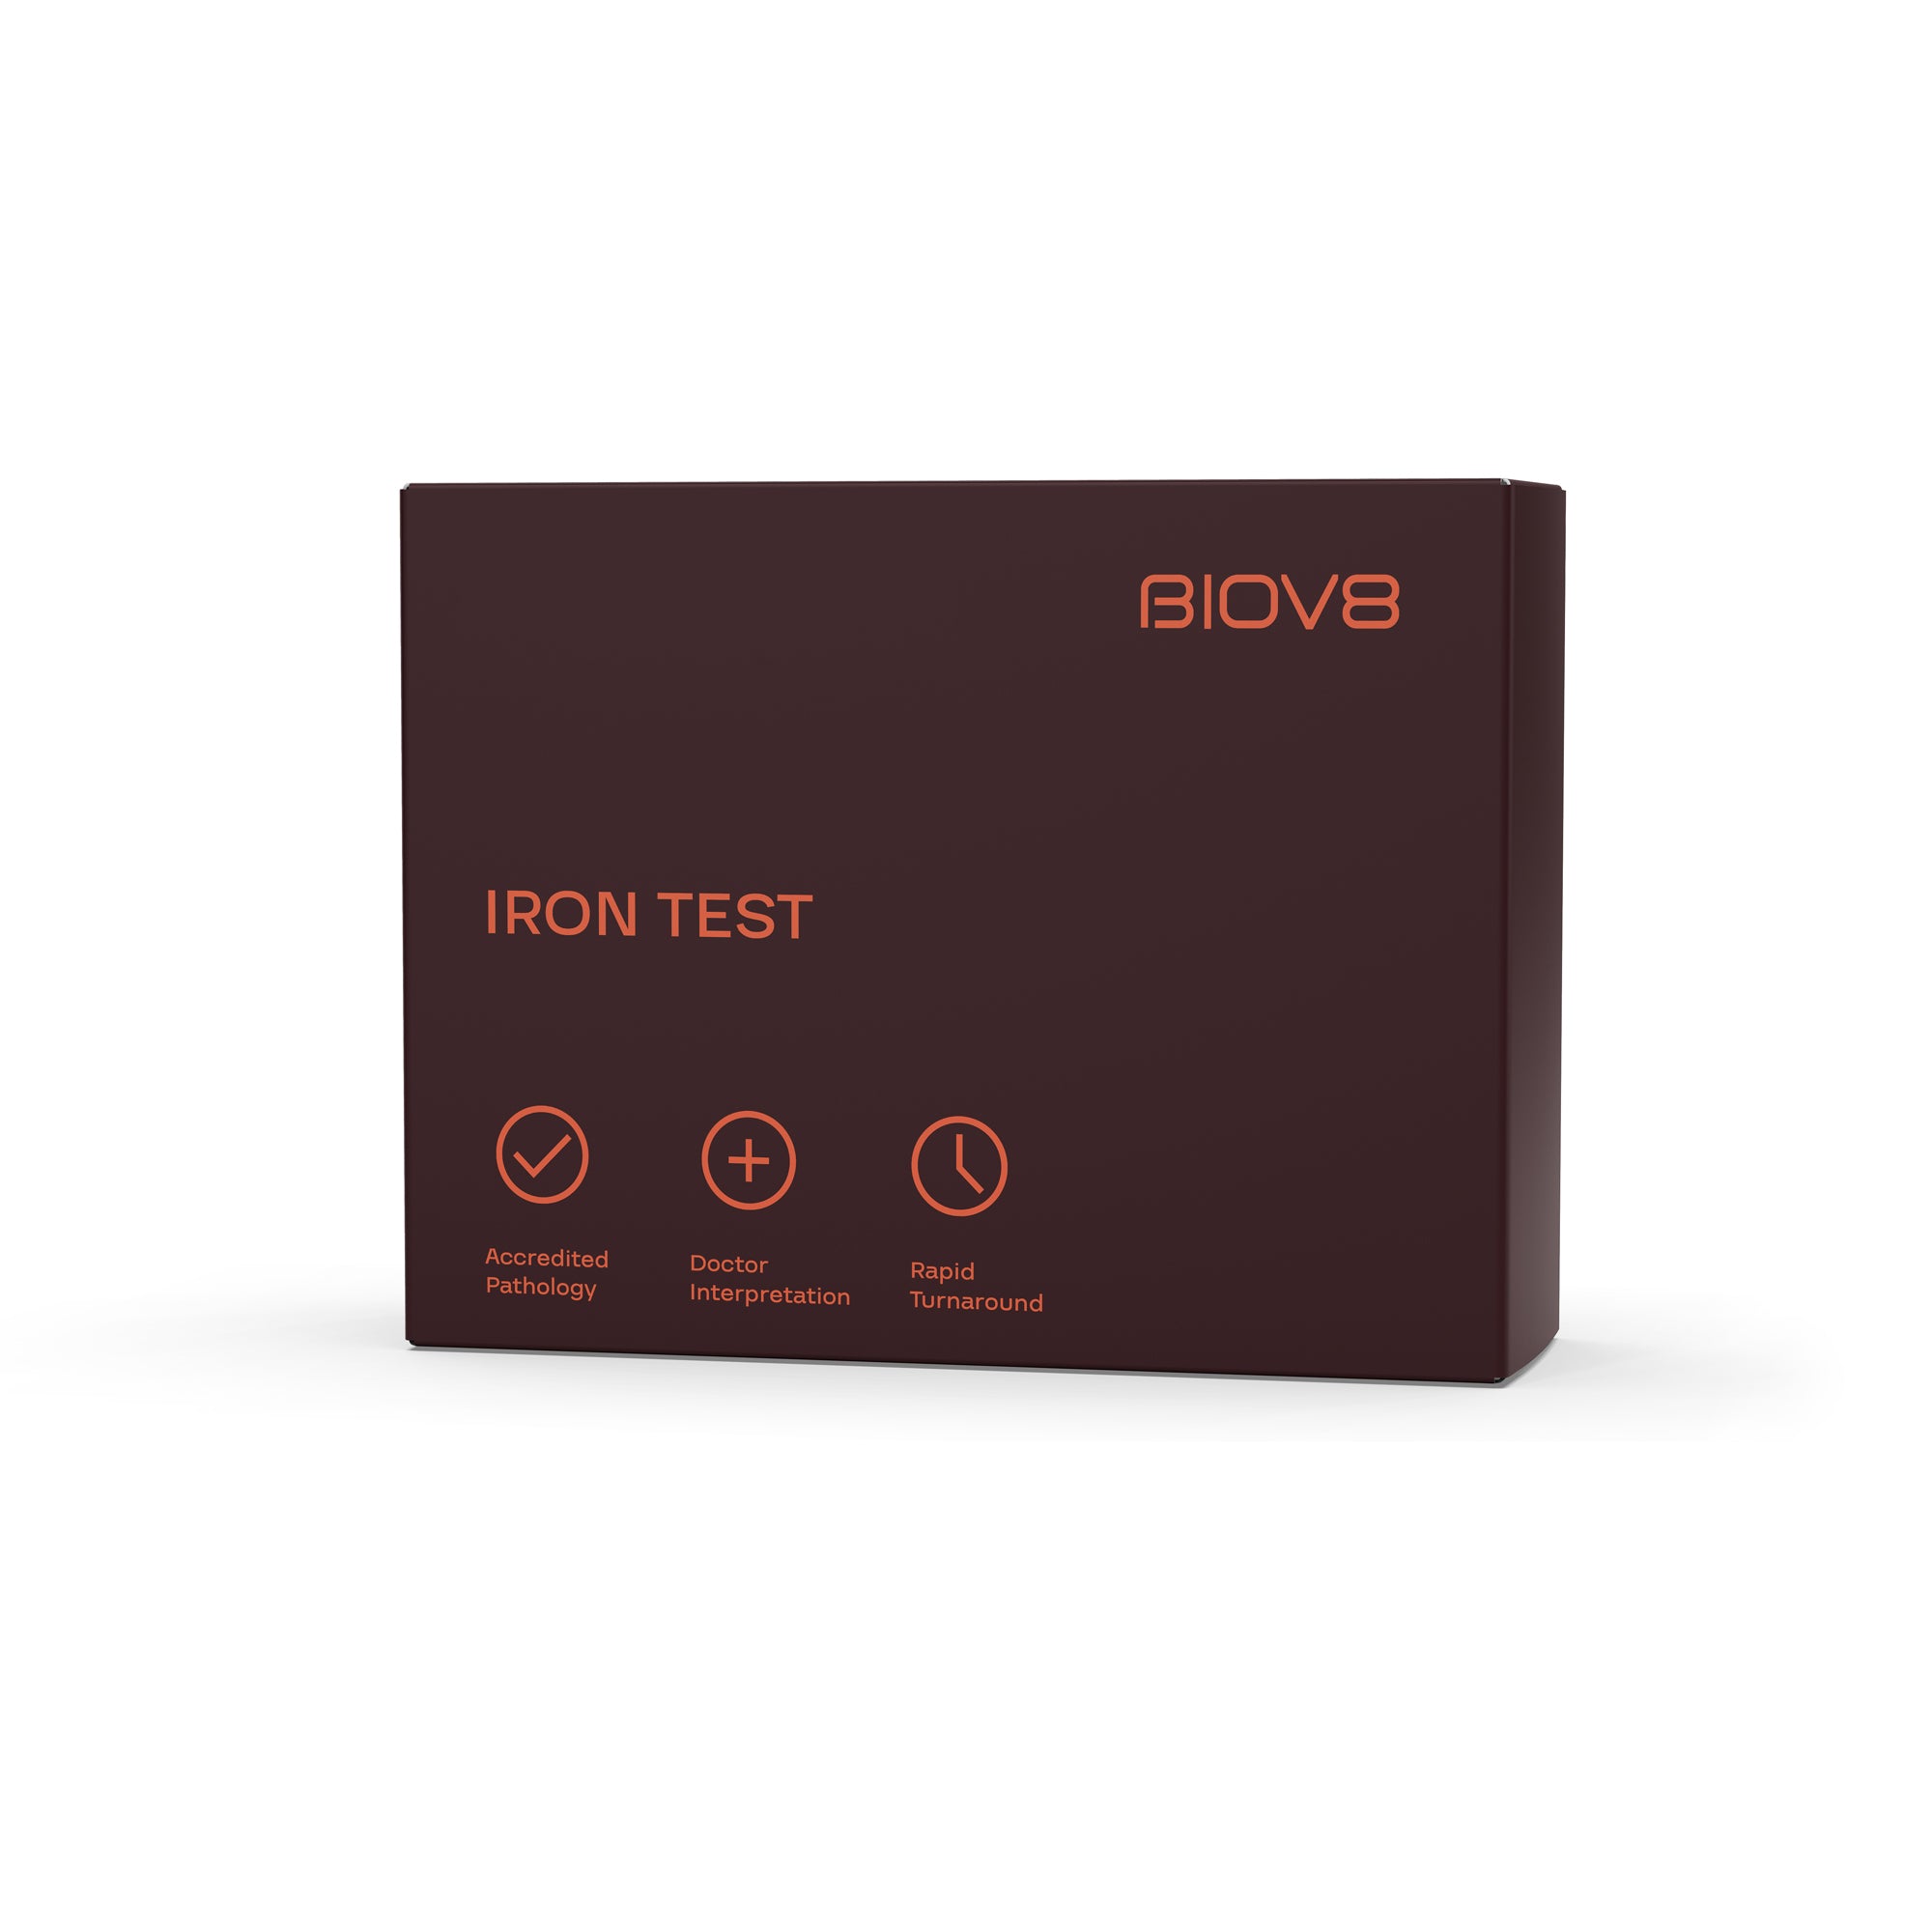 Biov8's Iron blood work analysis kit